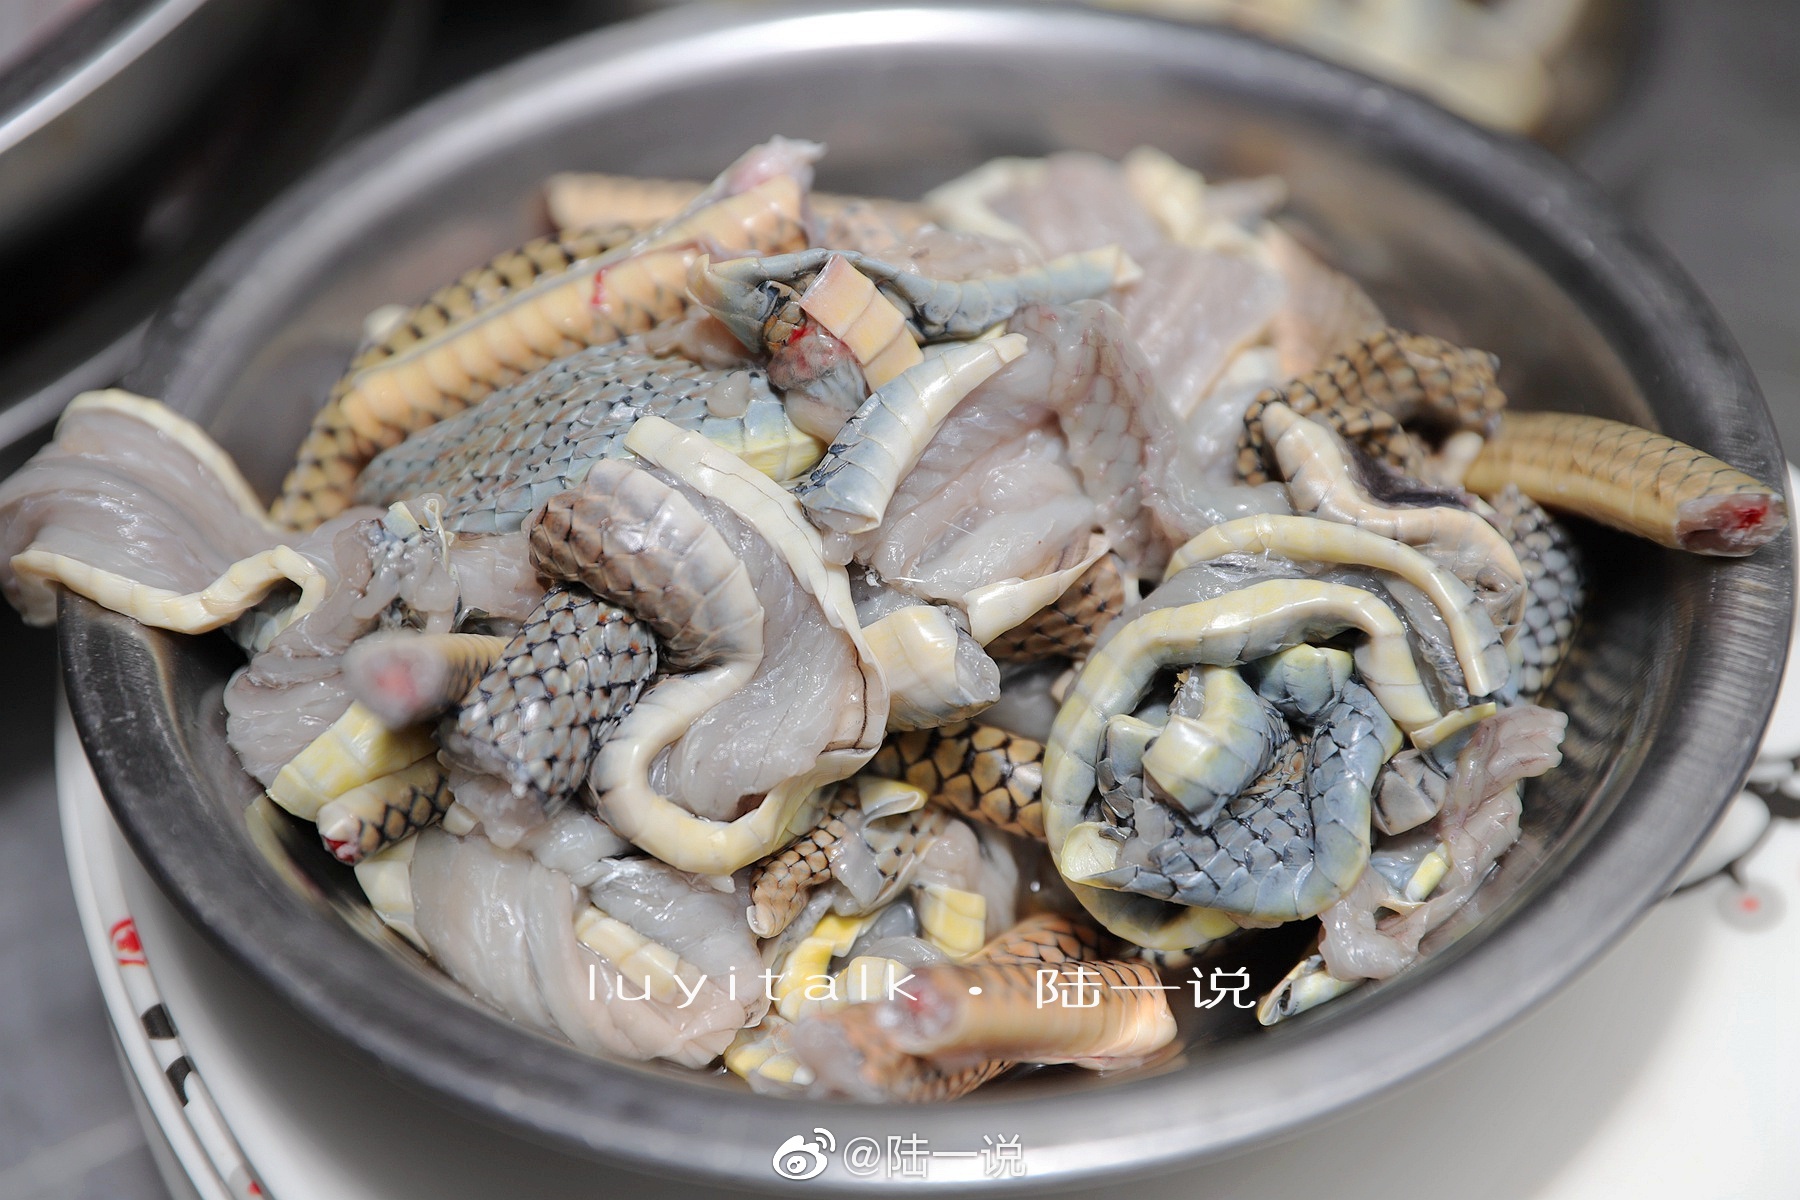 “榕记”原专注蛇宴的餐厅，由于非常时期改为普通粤菜